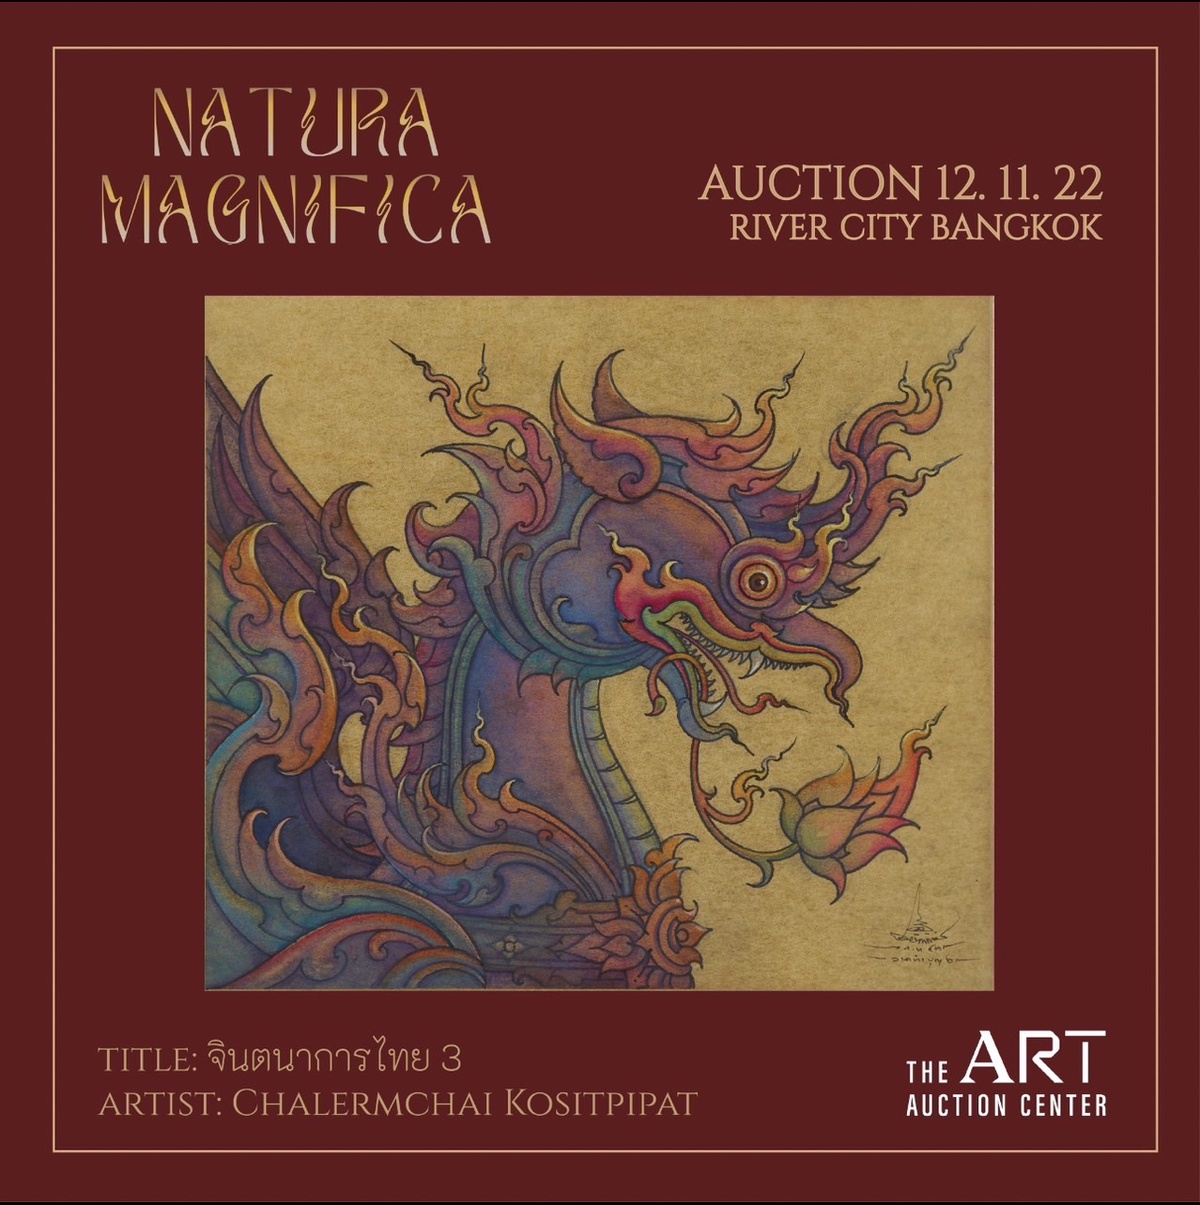 วงการศิลปะไทยคักคัก ดิ อาร์ต อ๊อคชั่น เซ็นเตอร์ (The Art Auction Center) เตรียมจัดประมูลผลงานศิลปะครั้งใหญ่แห่งปี ภายใต้ชื่อ NATURA MAGNIFICA